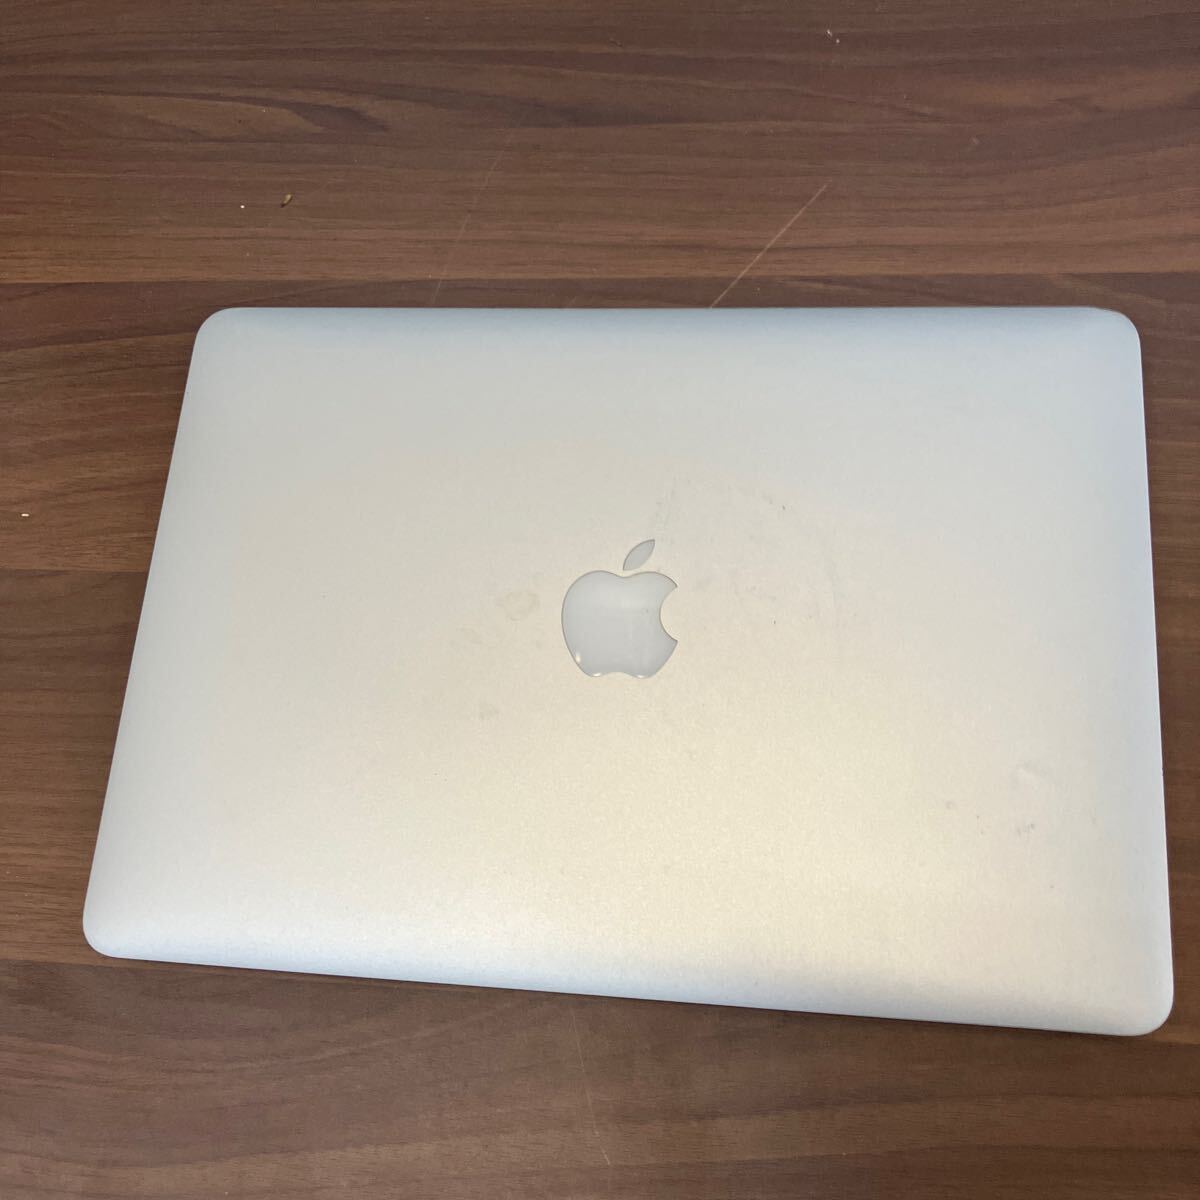 Apple MacBook AIR модель A1466 корпус только Apple ноутбук MacBook Note PC Apple товар персональный компьютер для бытового использования бытовая техника Air